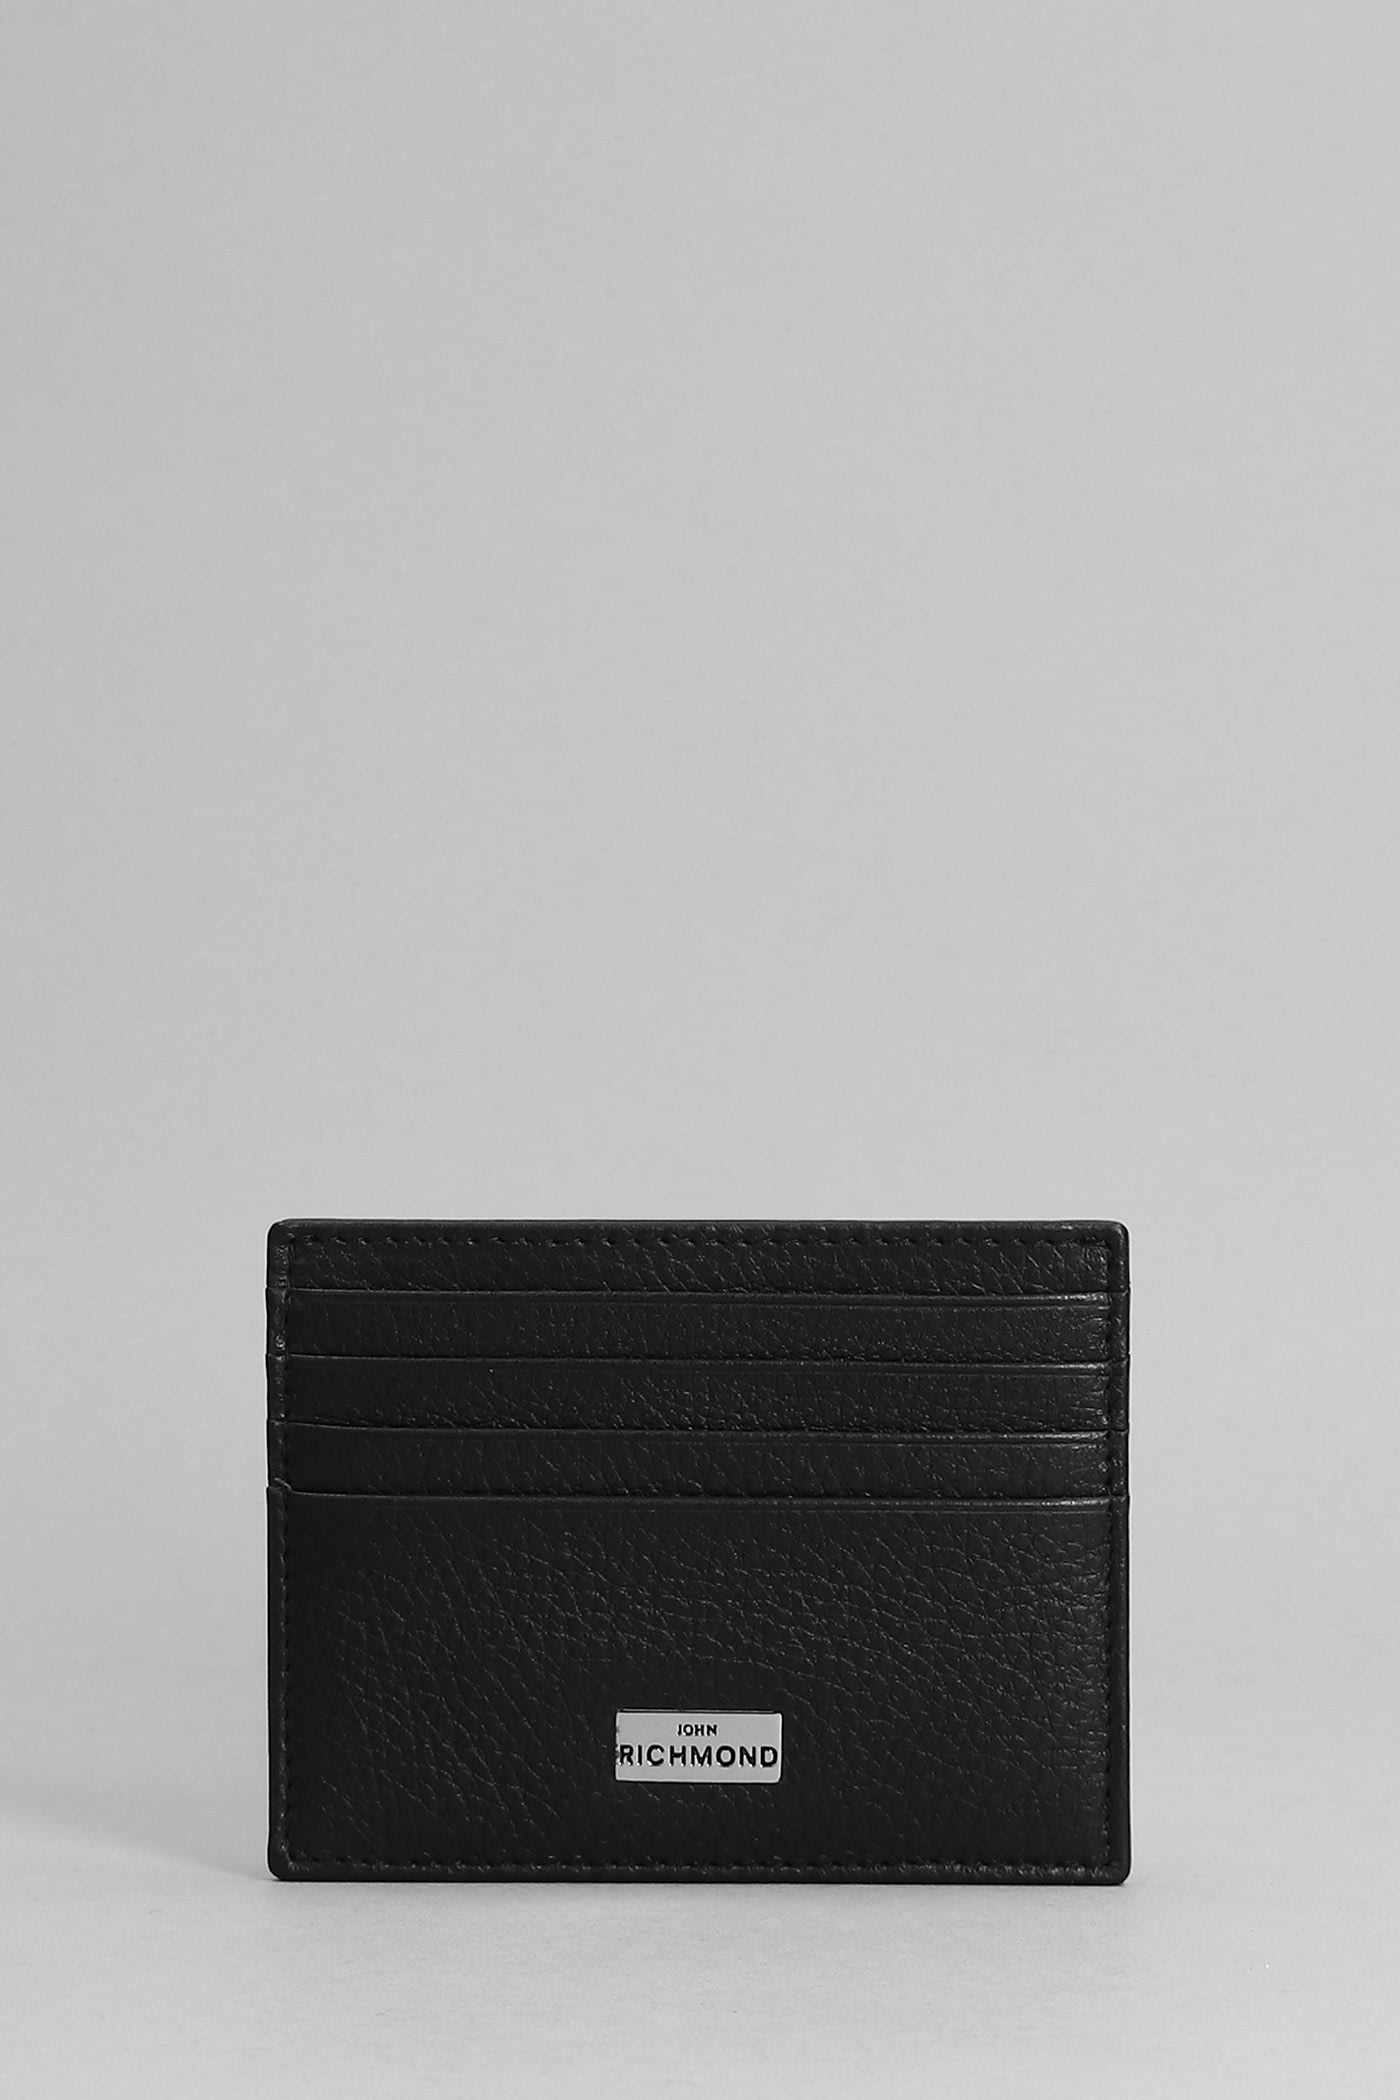 John Richmond Wallet In Black Leather